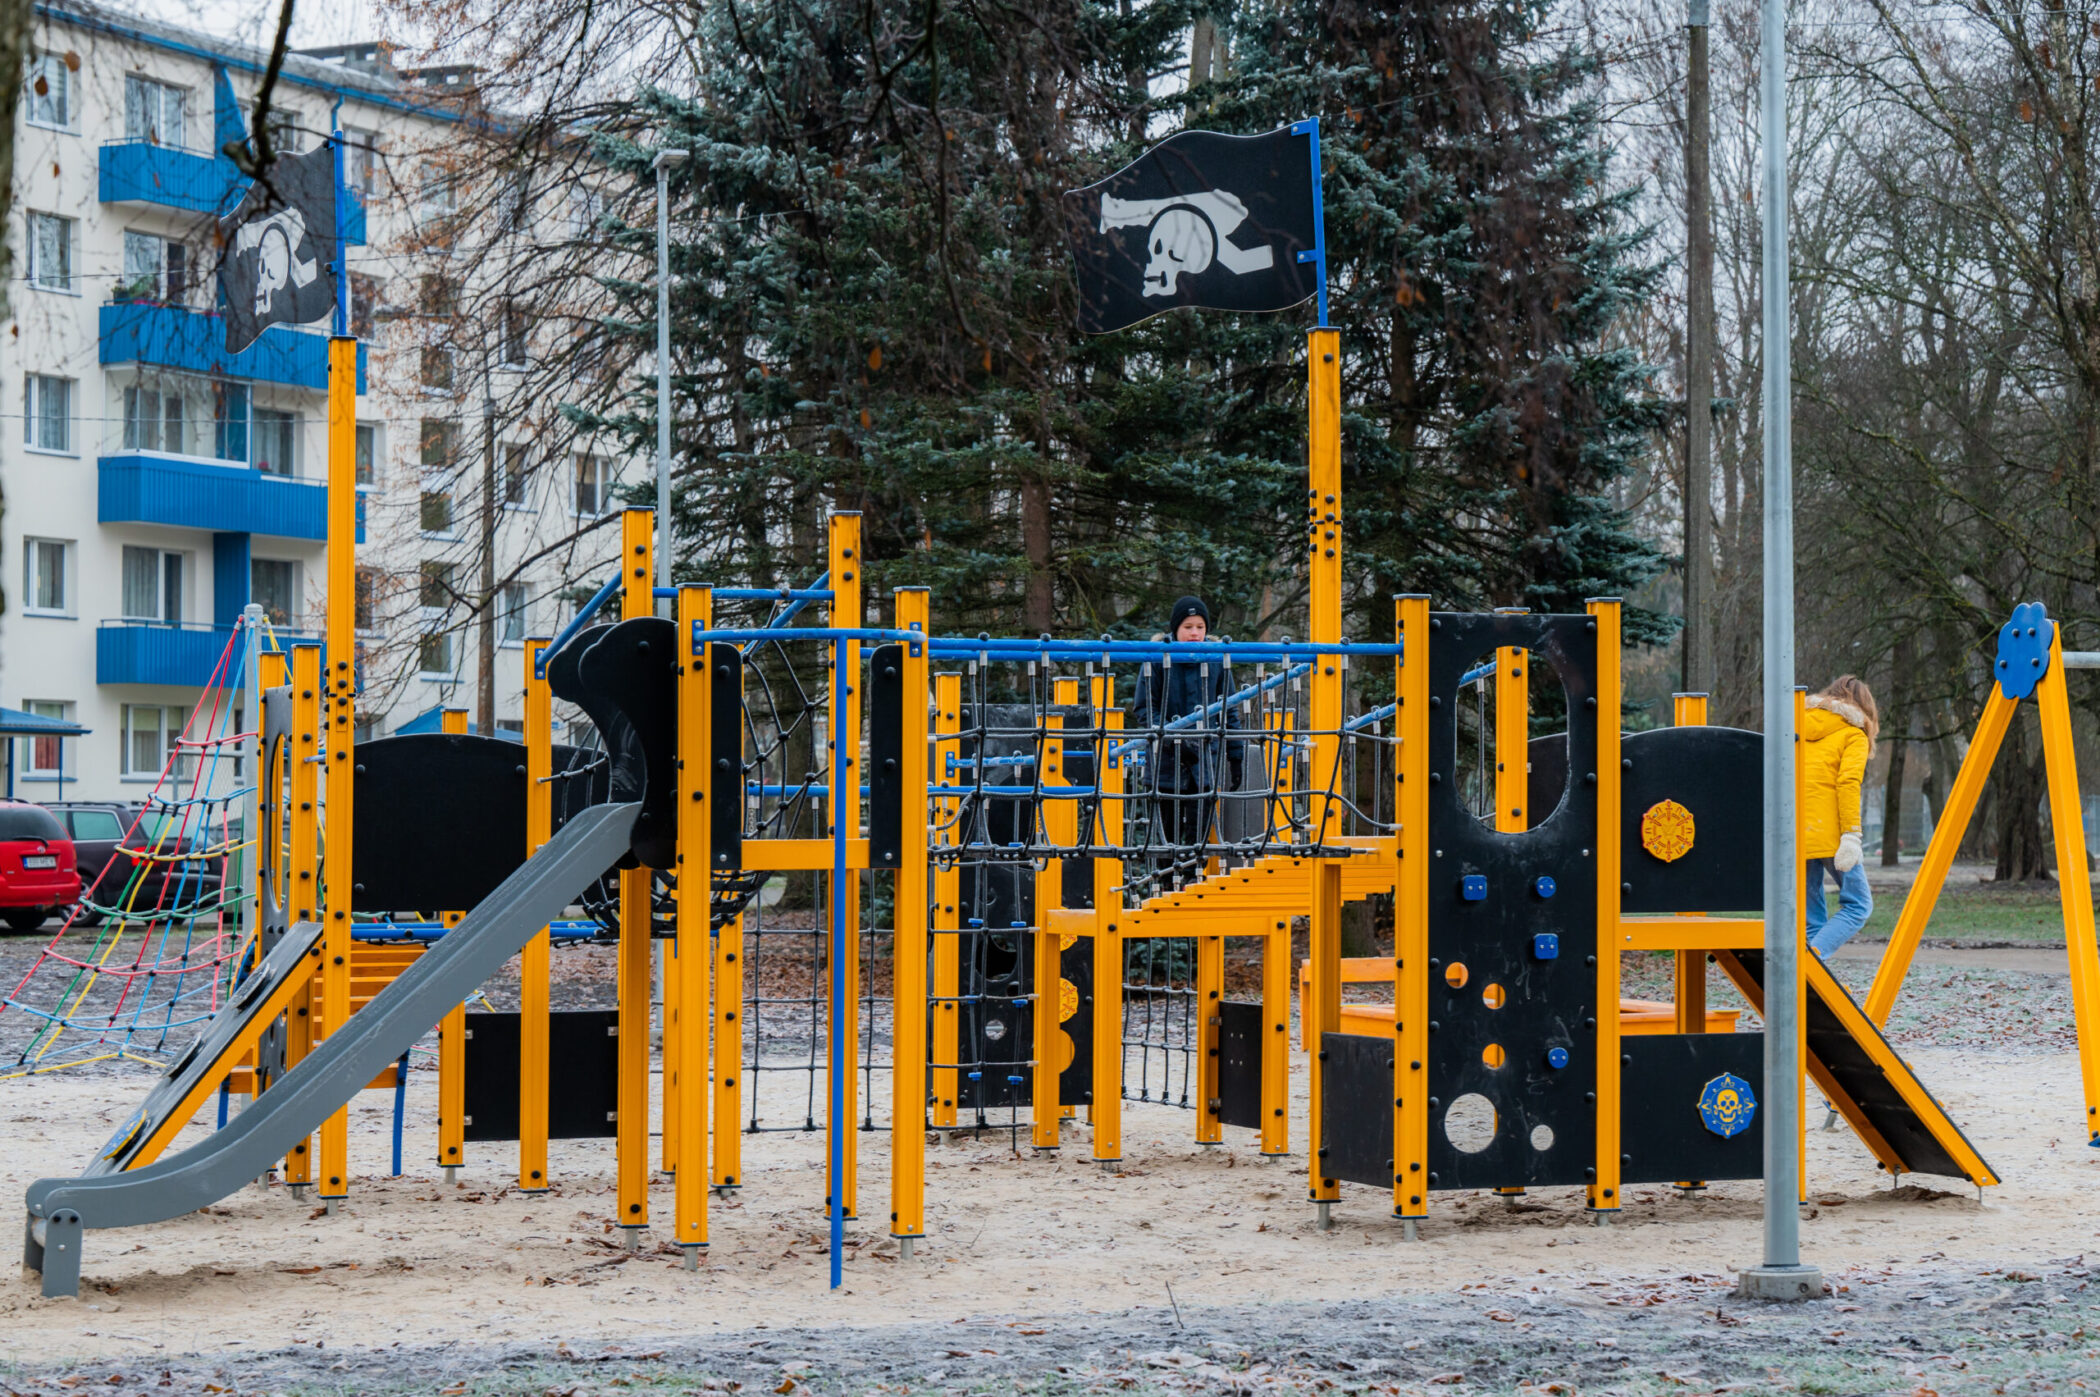 Playground in Mustamäe District, Tallinn